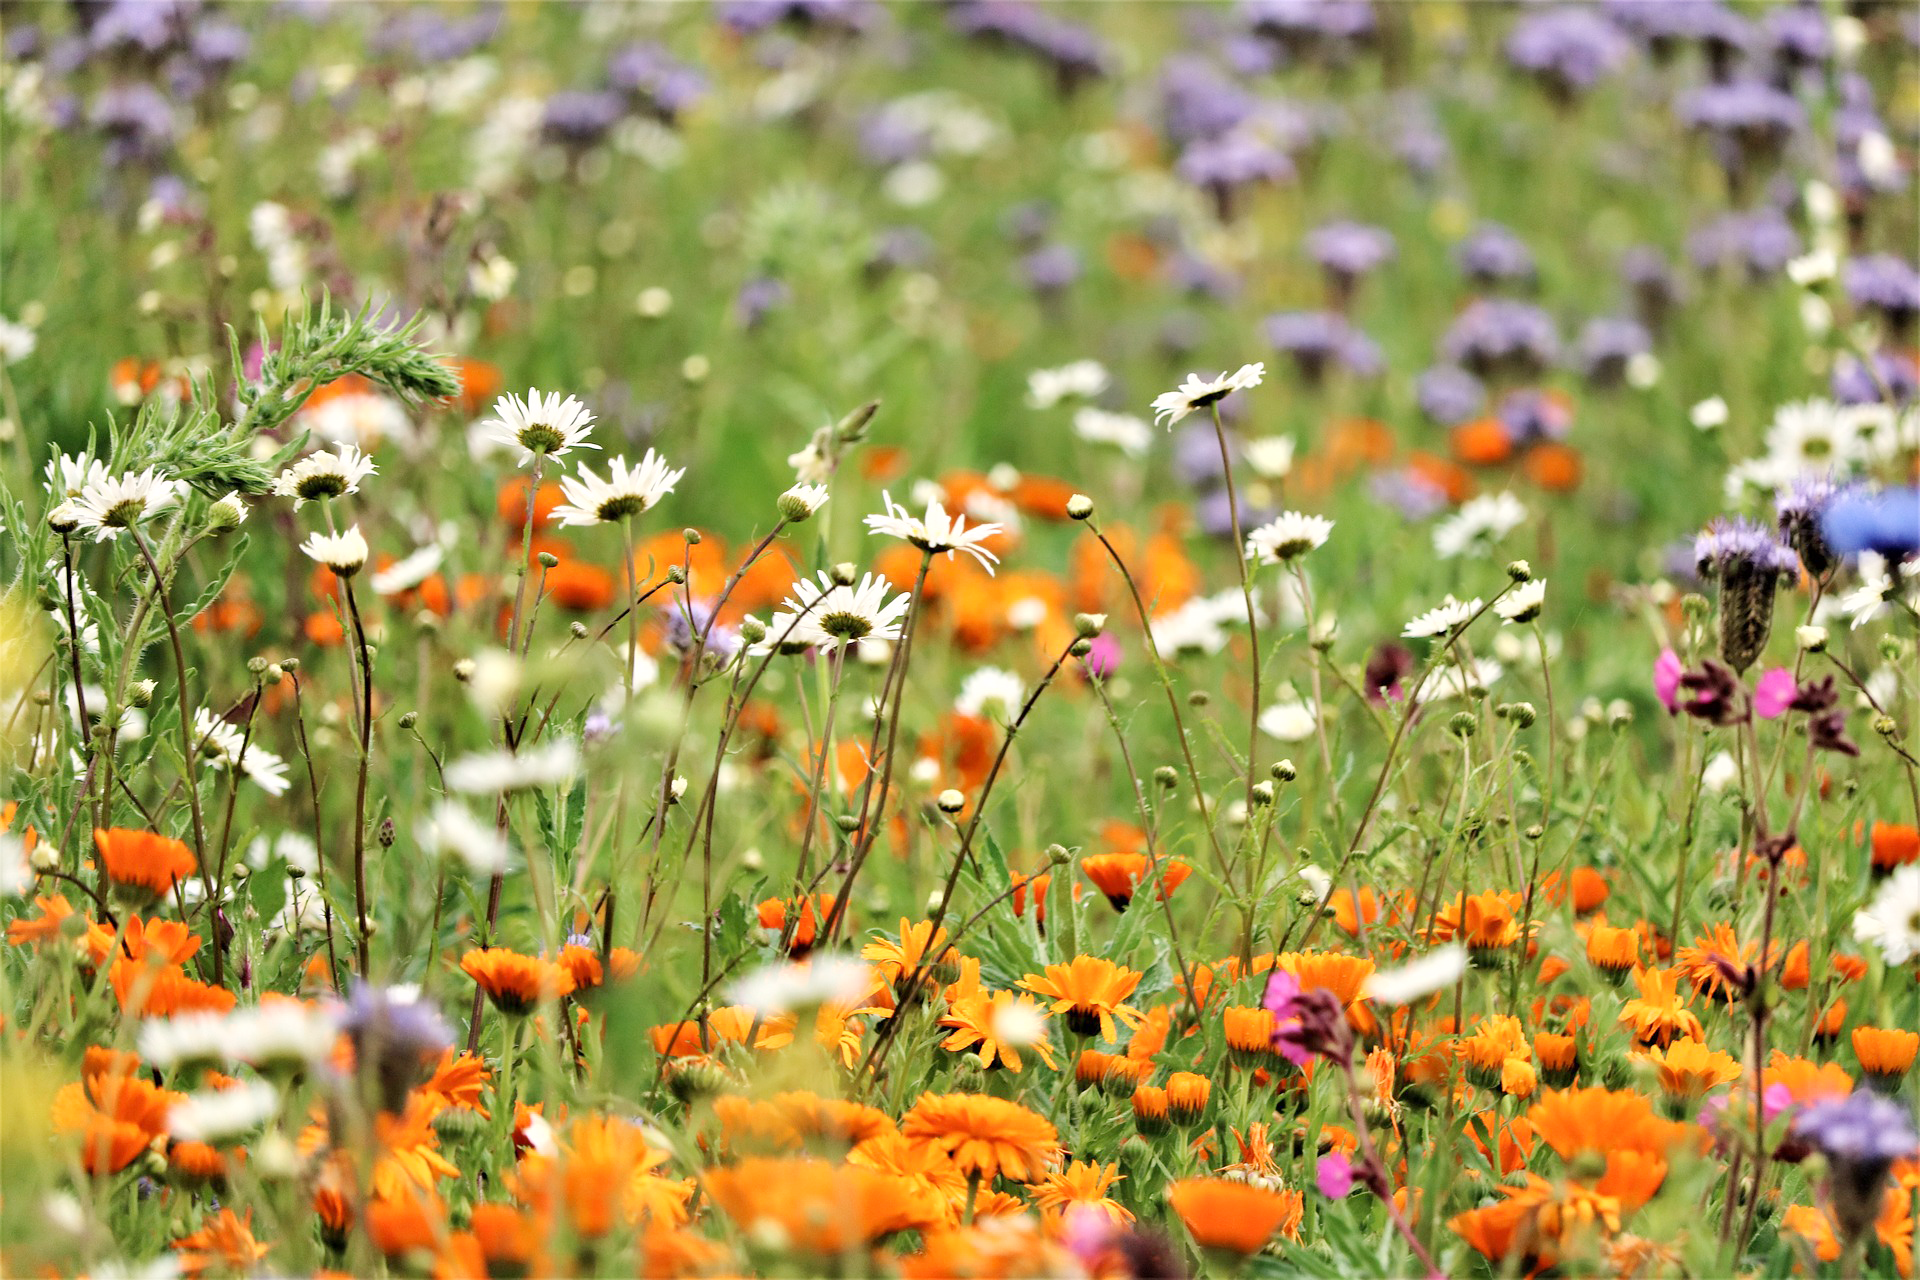 DK-Wildflower meadow